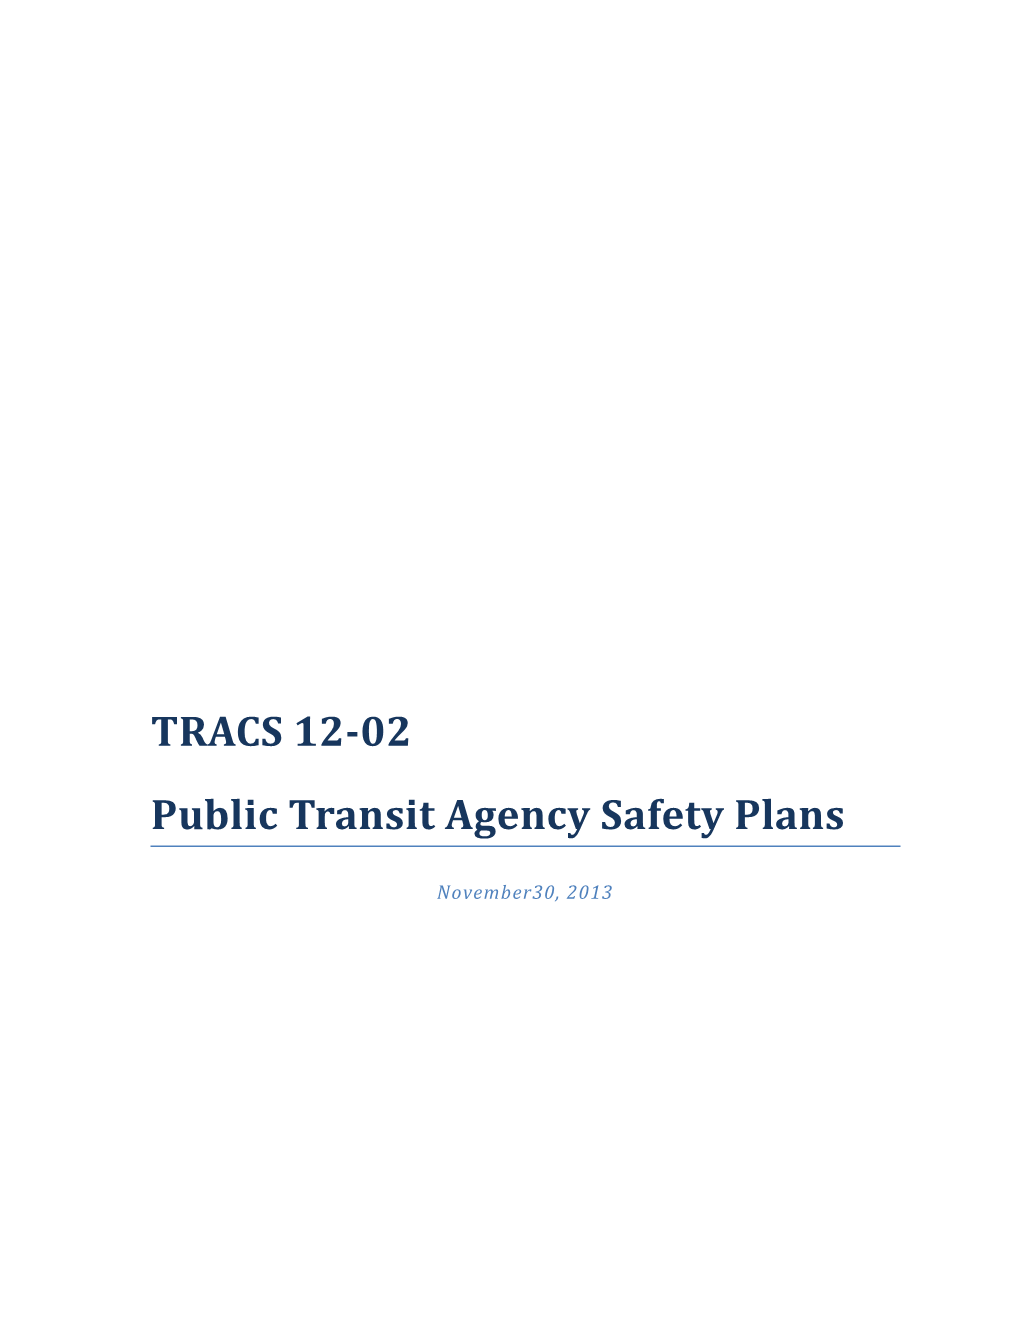 Public Transit Agency Safety Plans